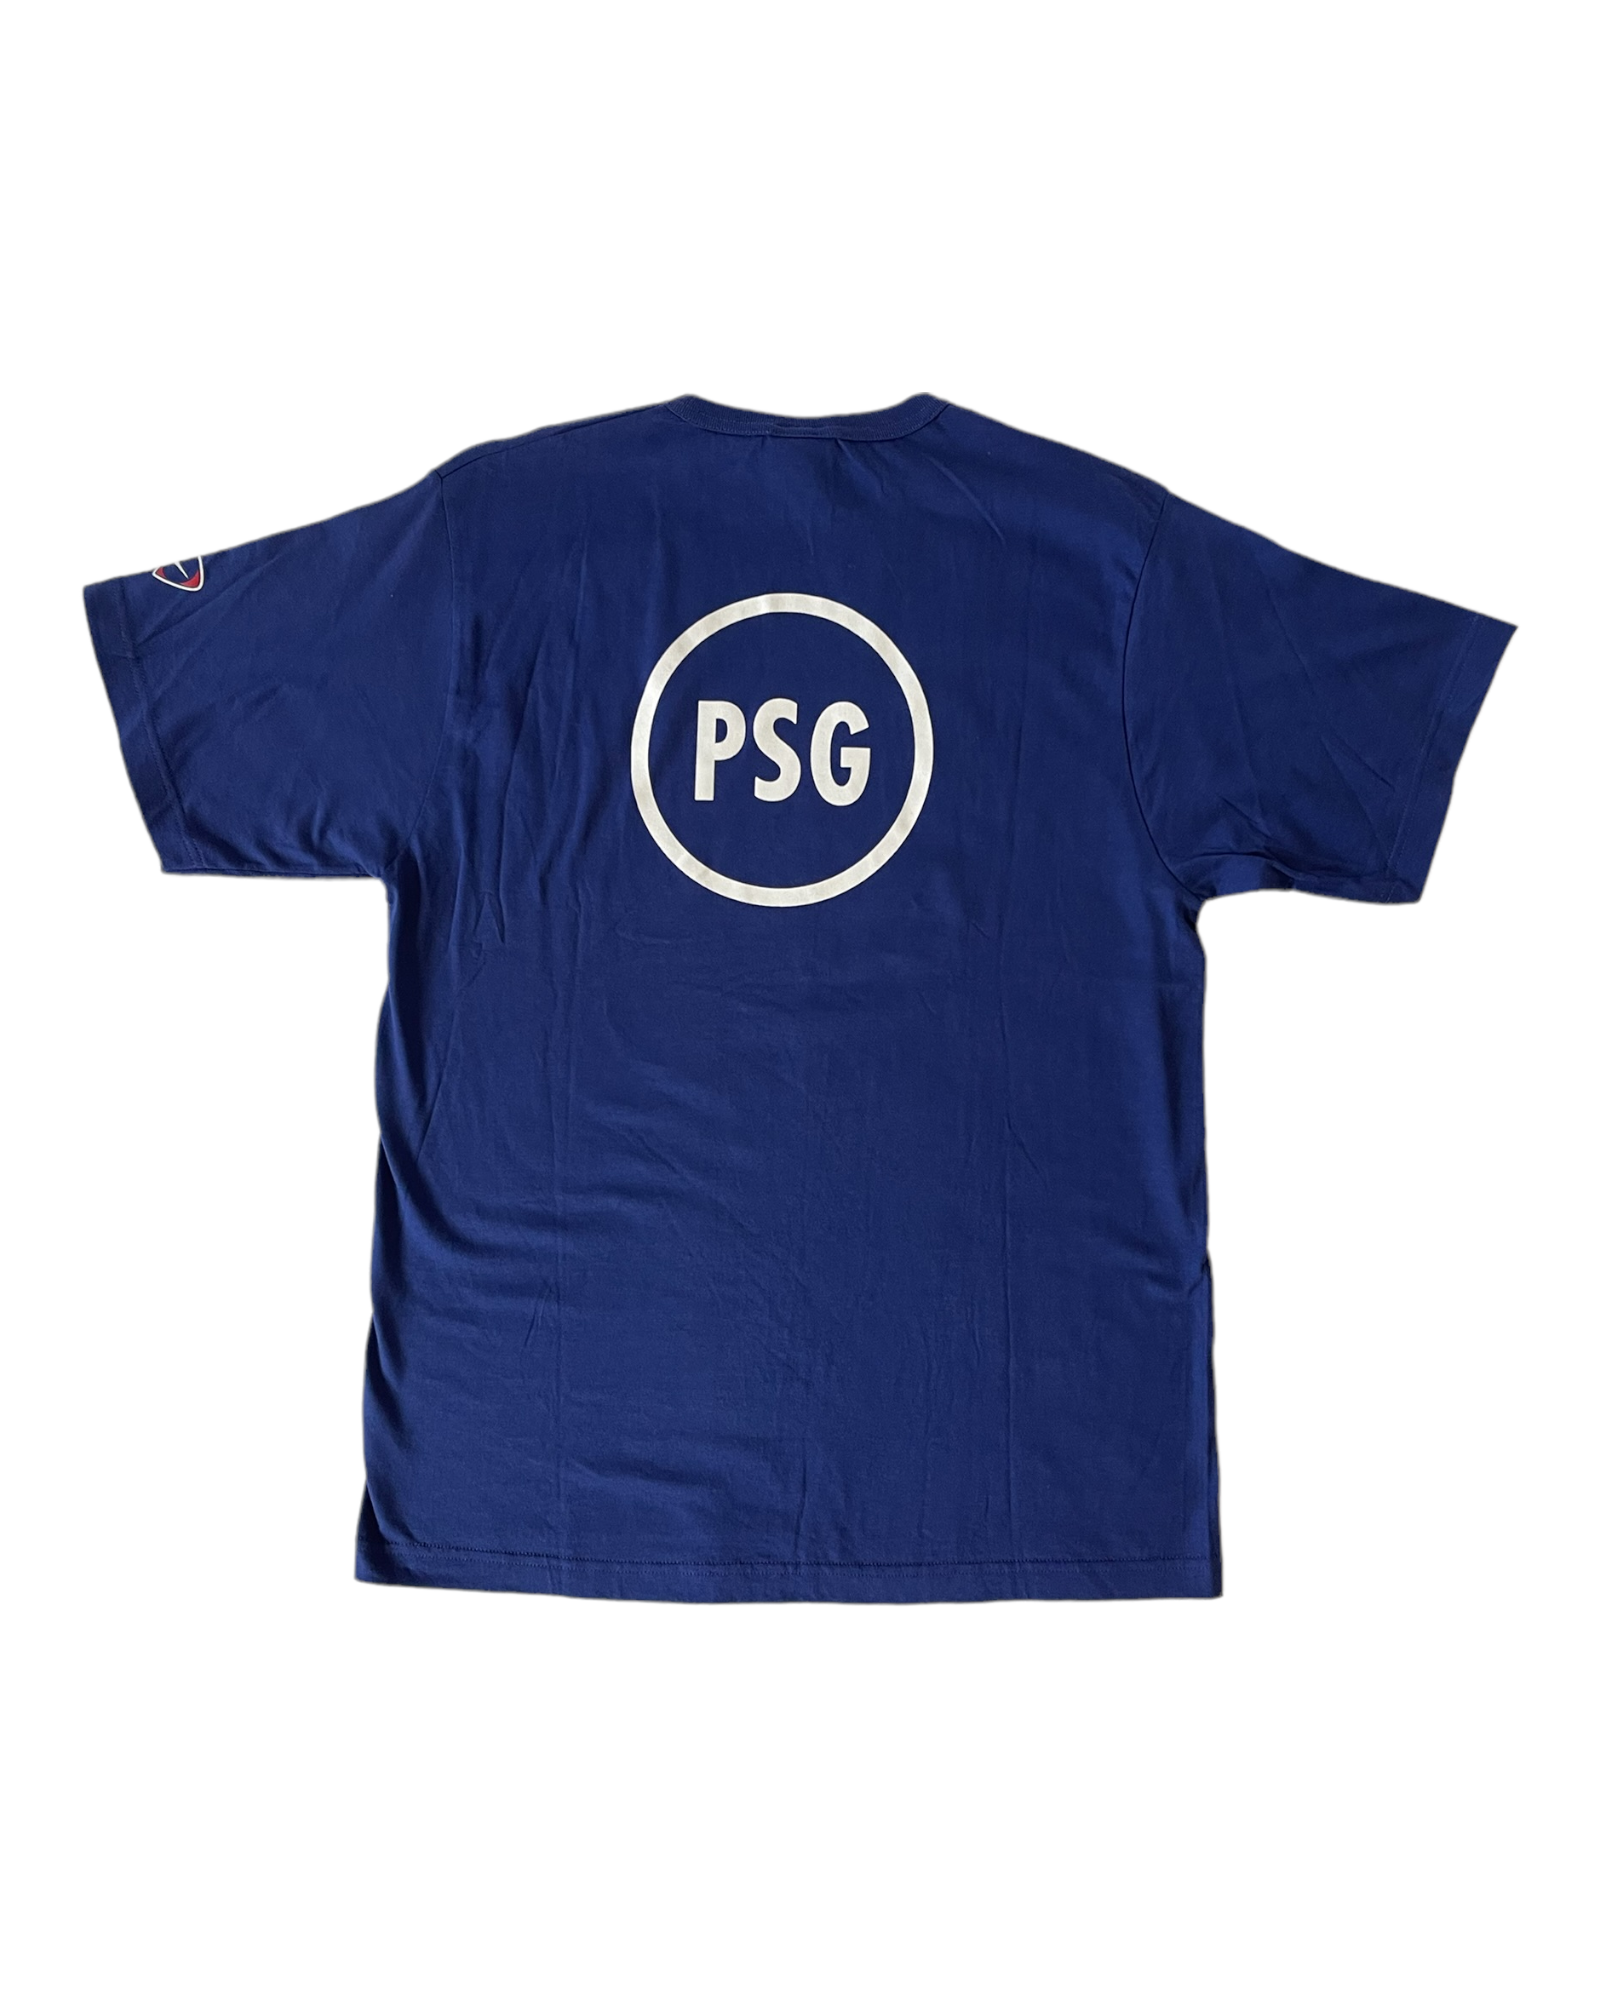 PSG Paris Saint Germain Nike Team Total 90 BNWT Early '00 T-Shirt Blue Size M 100% Cotton NOS OG DS